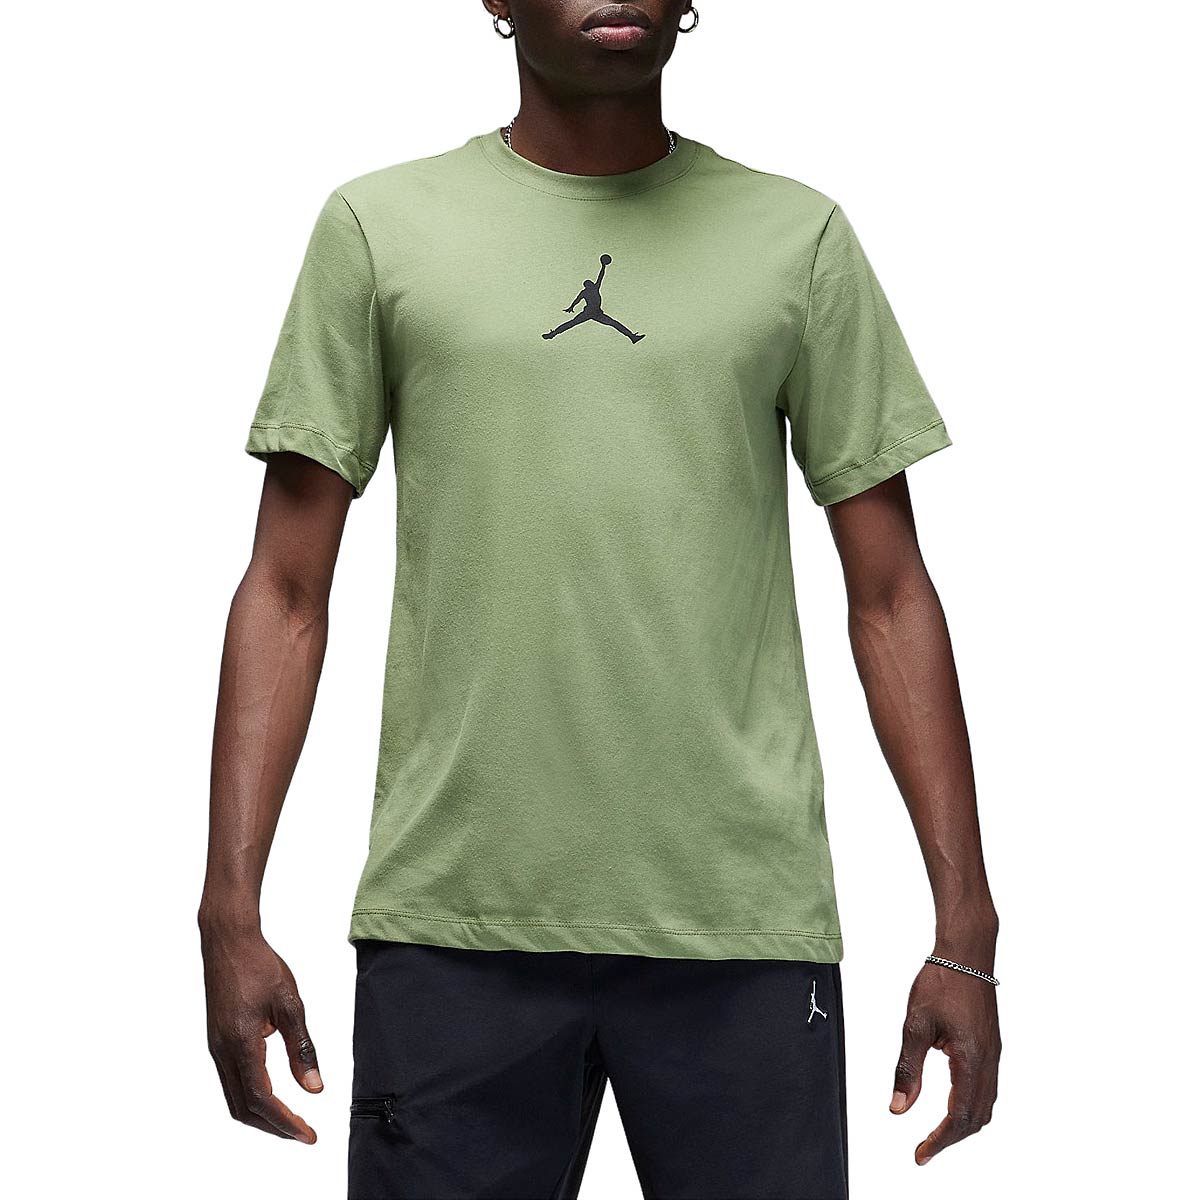 Jordan Jumpman Dri-fit T-shirt, Sky J Lt Olive/schwarz S